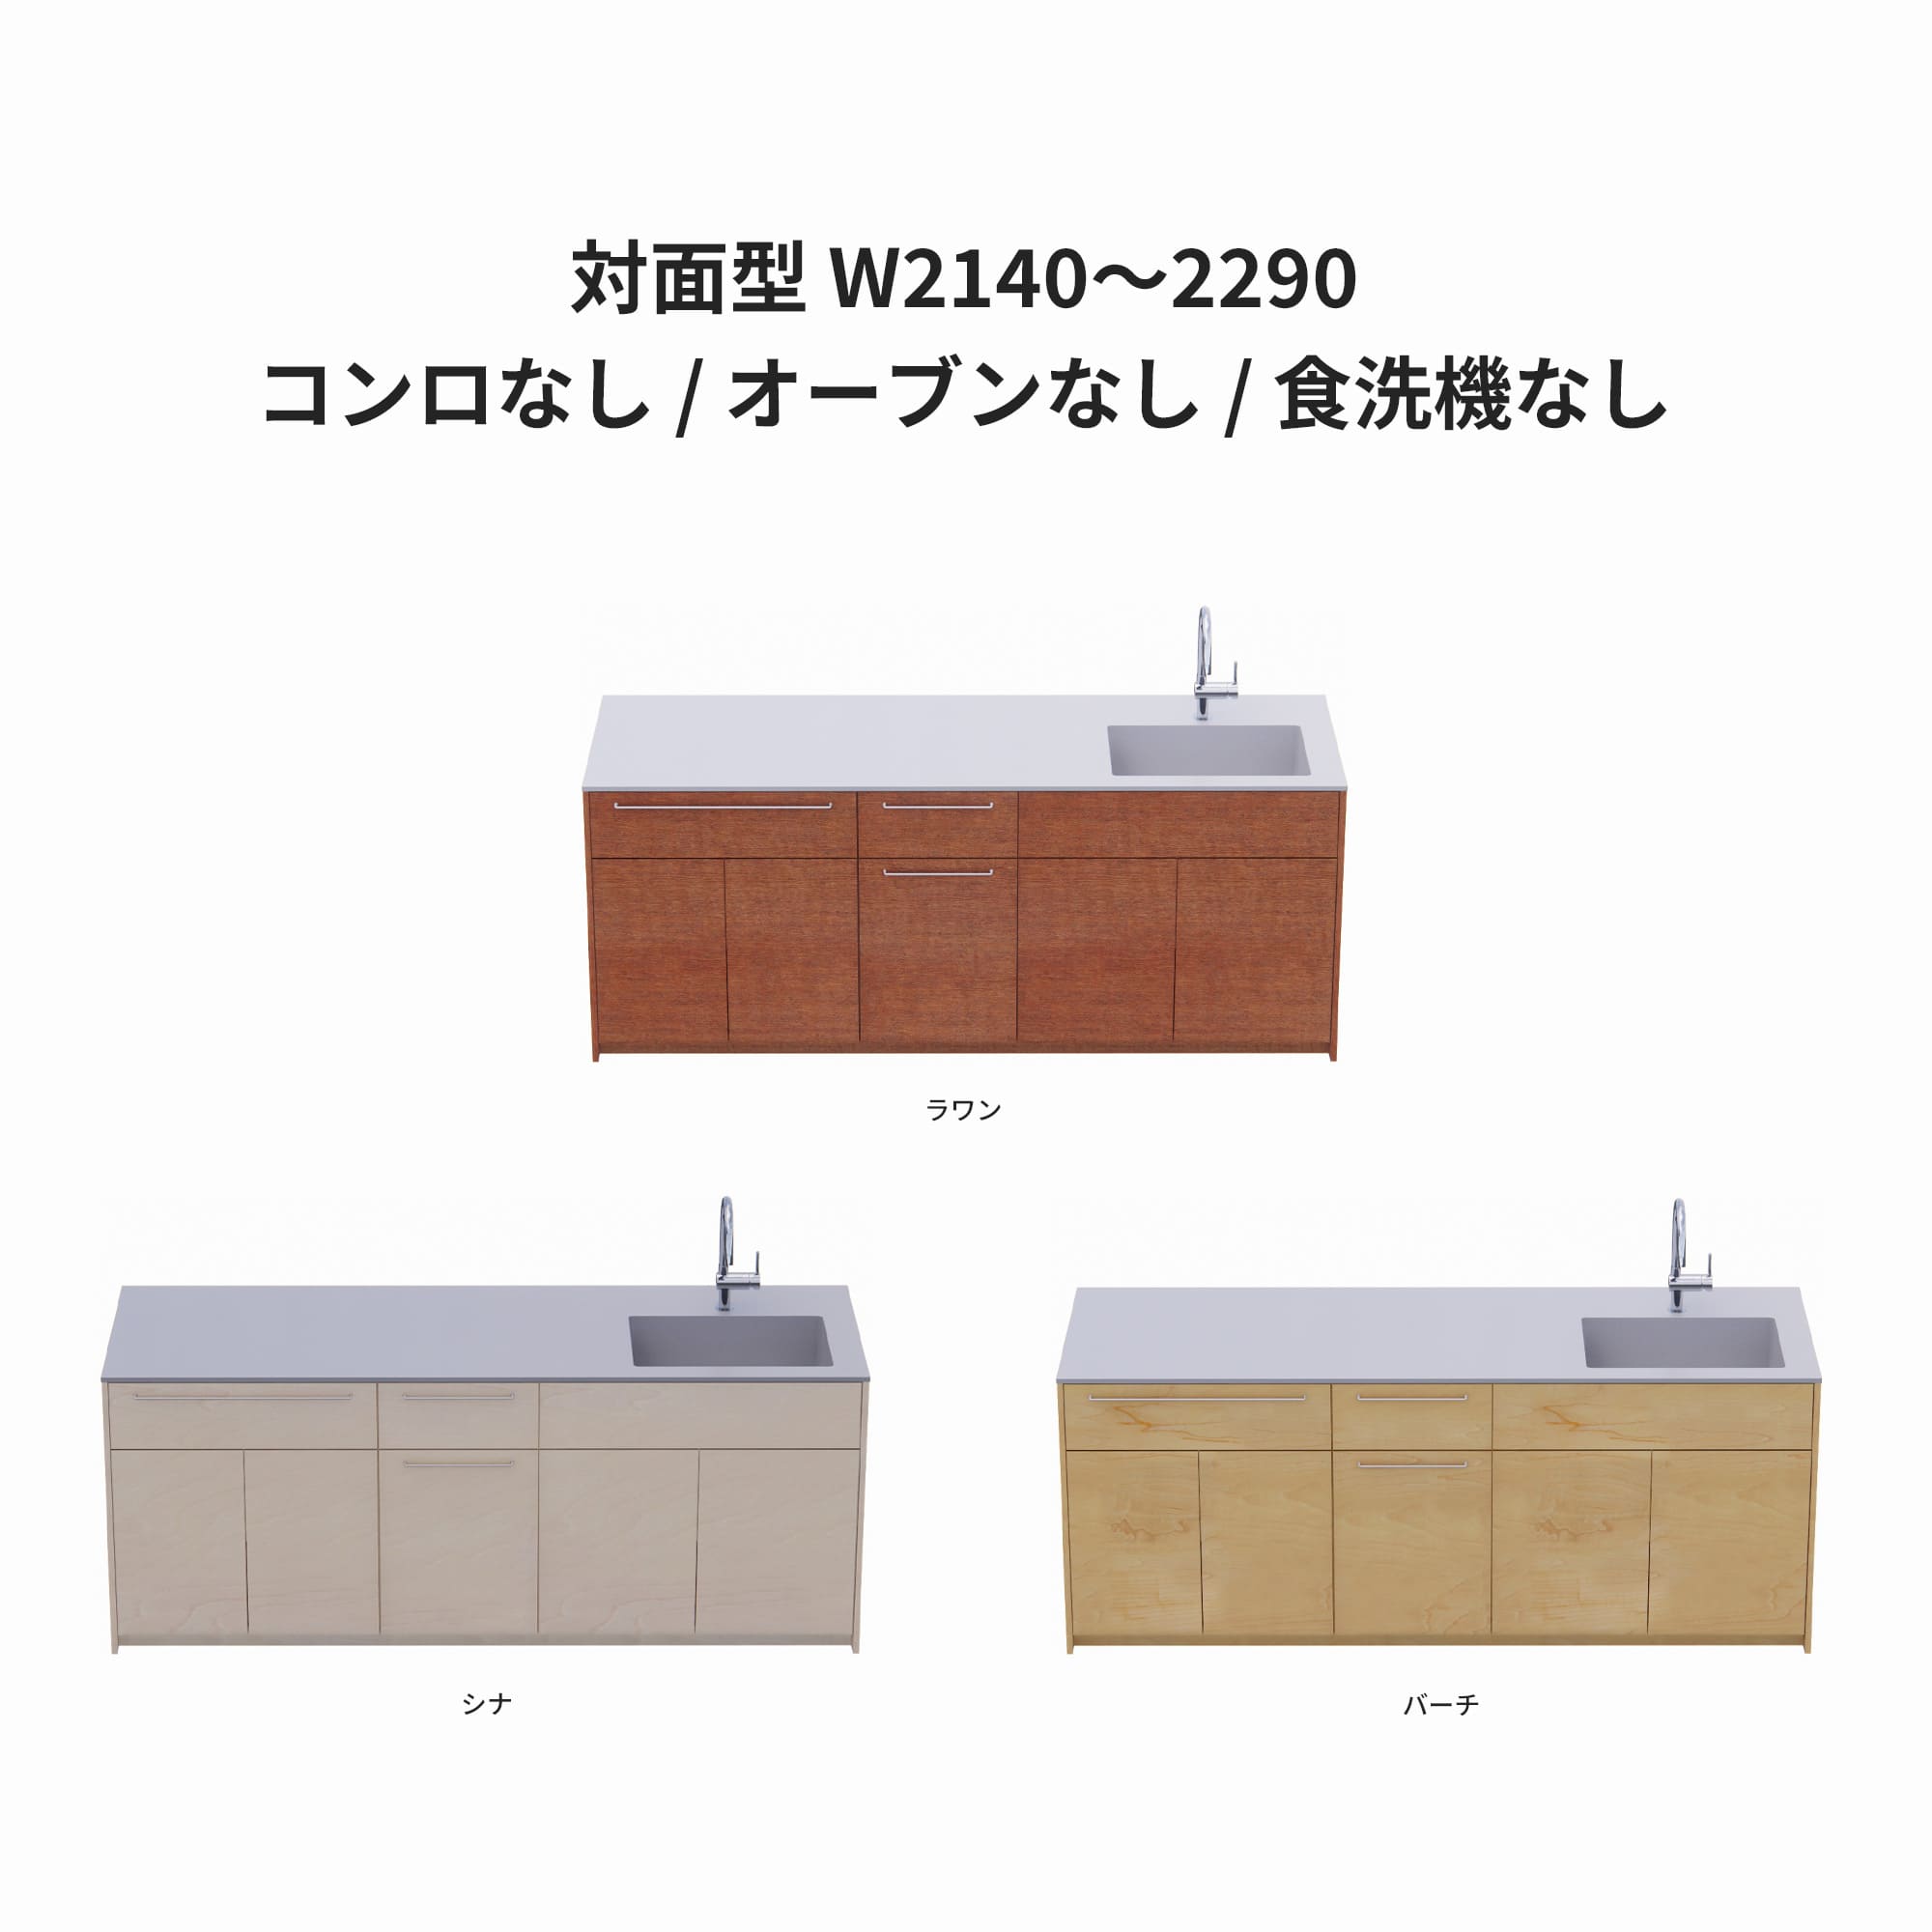 木製システムキッチン 対面型 W2140～2290・コンロなし / オーブンなし / 食洗機なし KB-KC022-36-G183 ラワン・シナ・バーチが選択できます